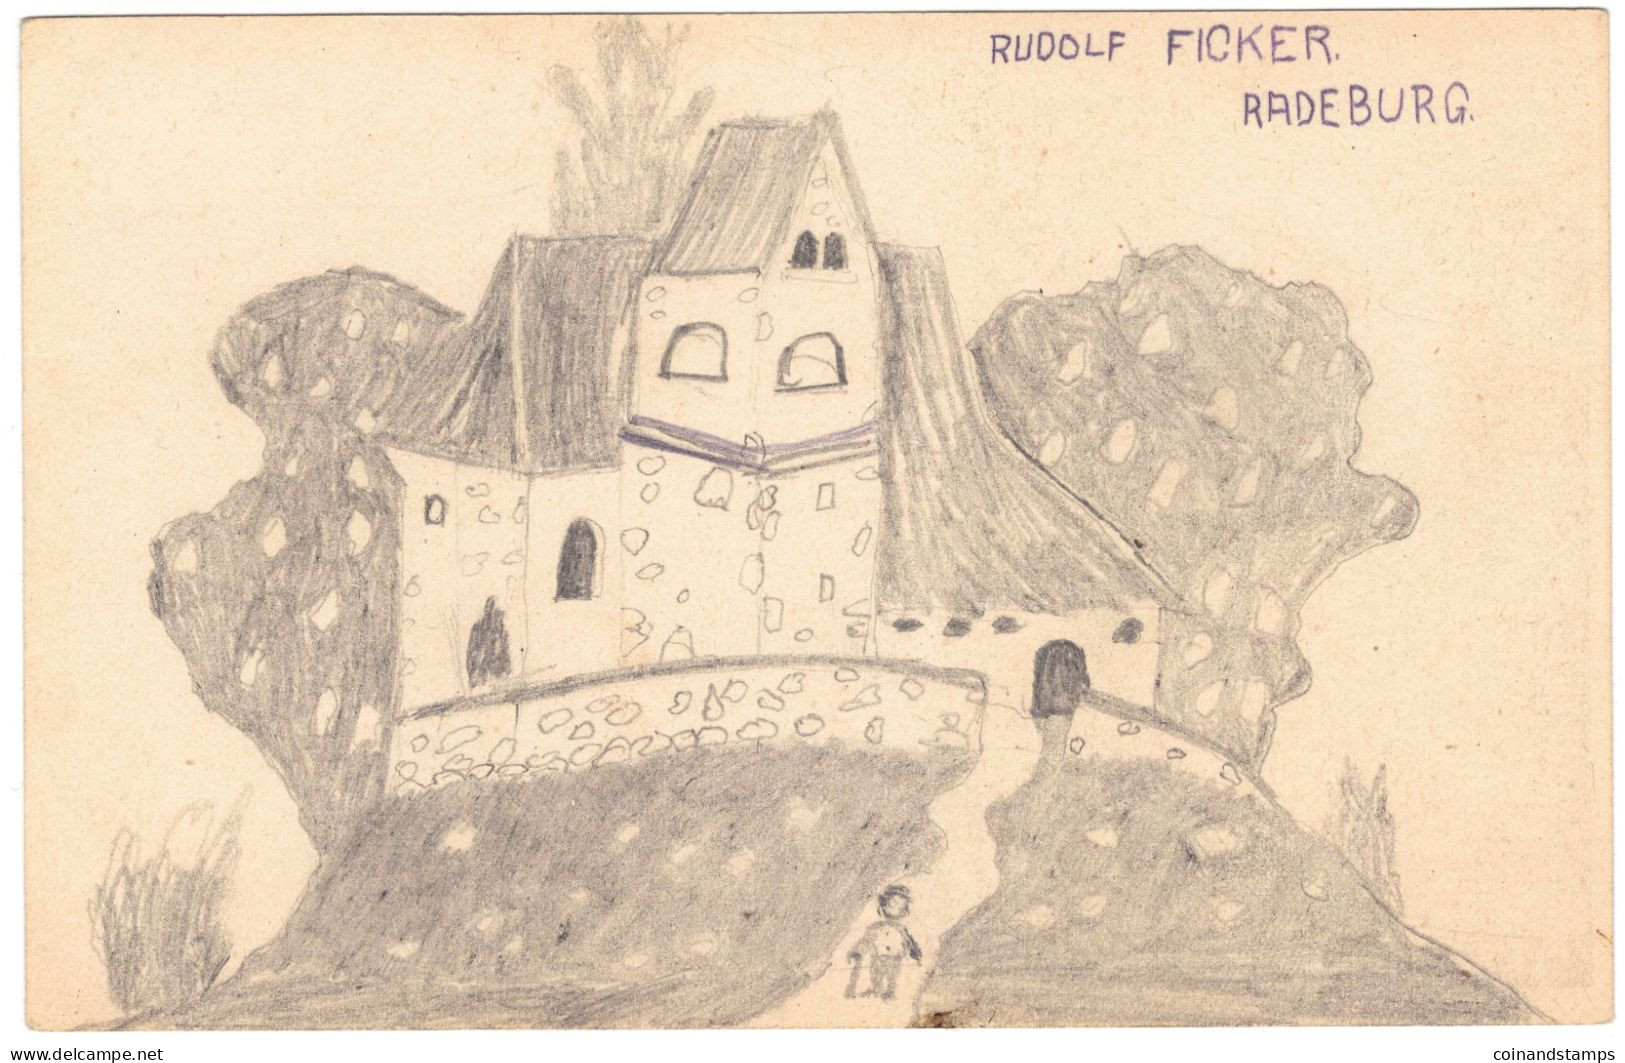 Postkarte Radeburg Rudolf FICKER Zeichnung Auf Postkarte 1915 Gold Gab Ich Zur Wehr/Eisen Nahm Ich Zur Ehr, I-II - Radierungen